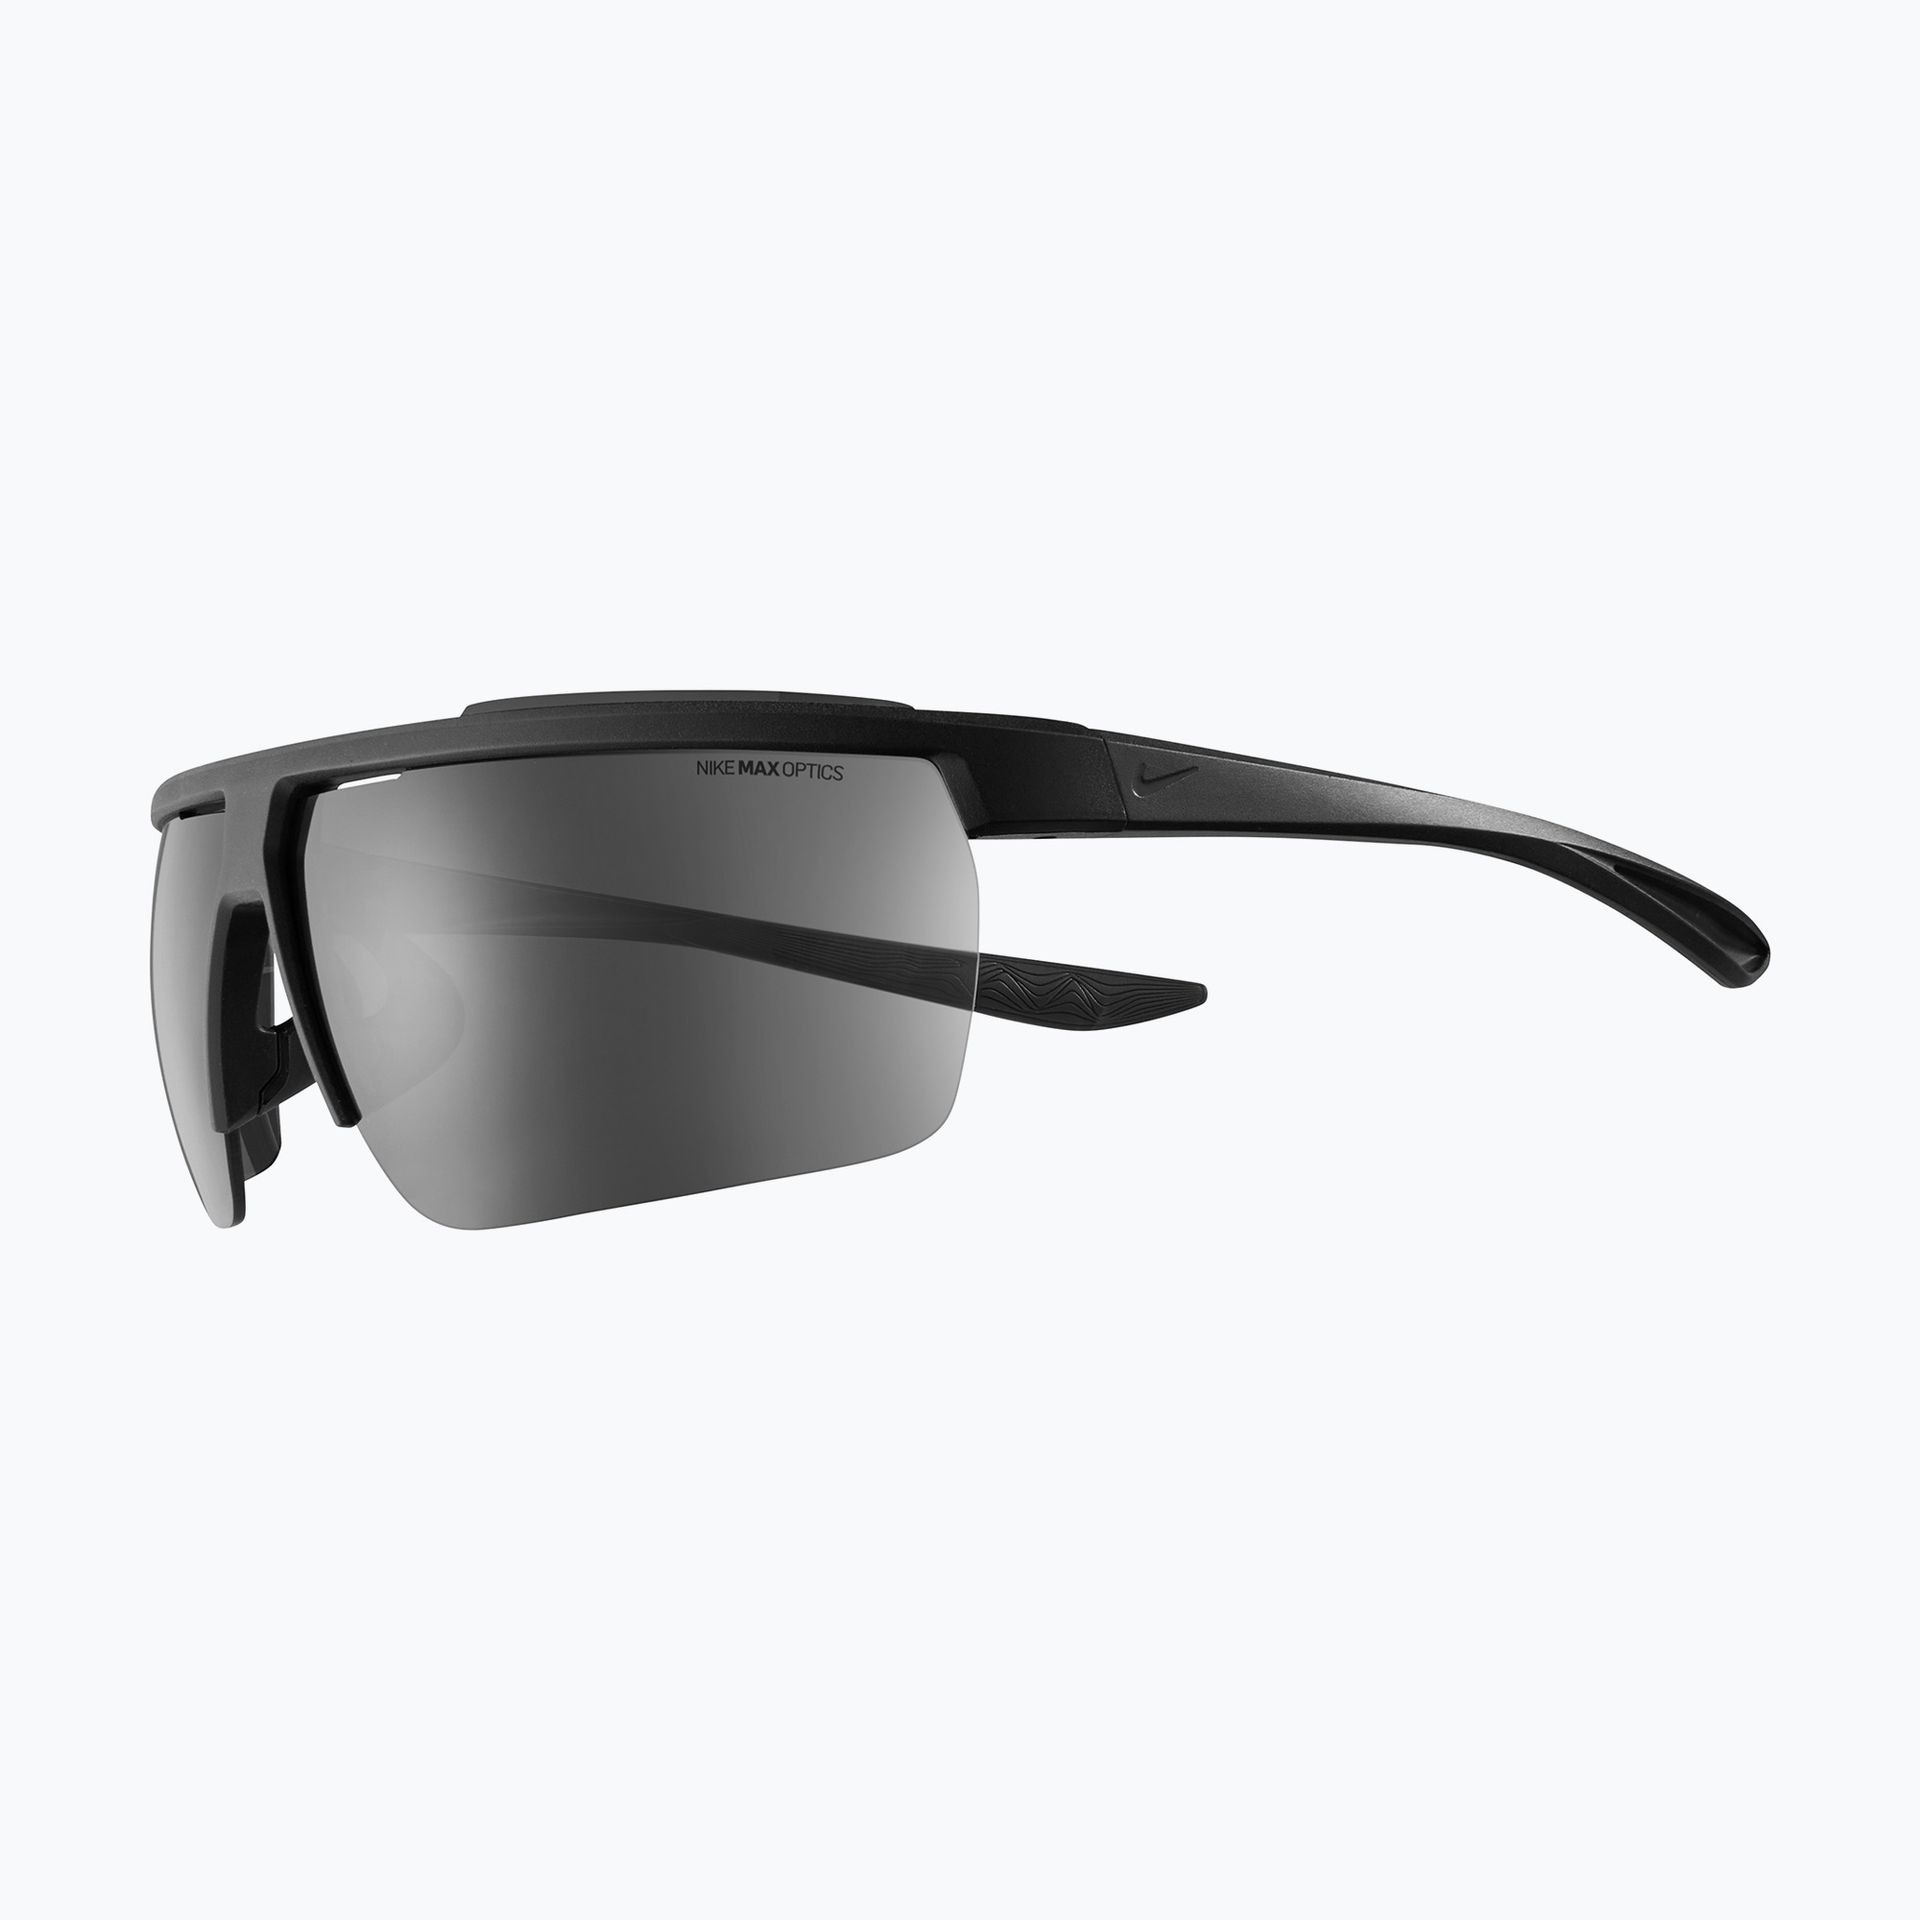 Okulary przeciwsłoneczne Nike Windshield matte black/dark grey | WYSYŁKA W 24H | 30 DNI NA ZWROT